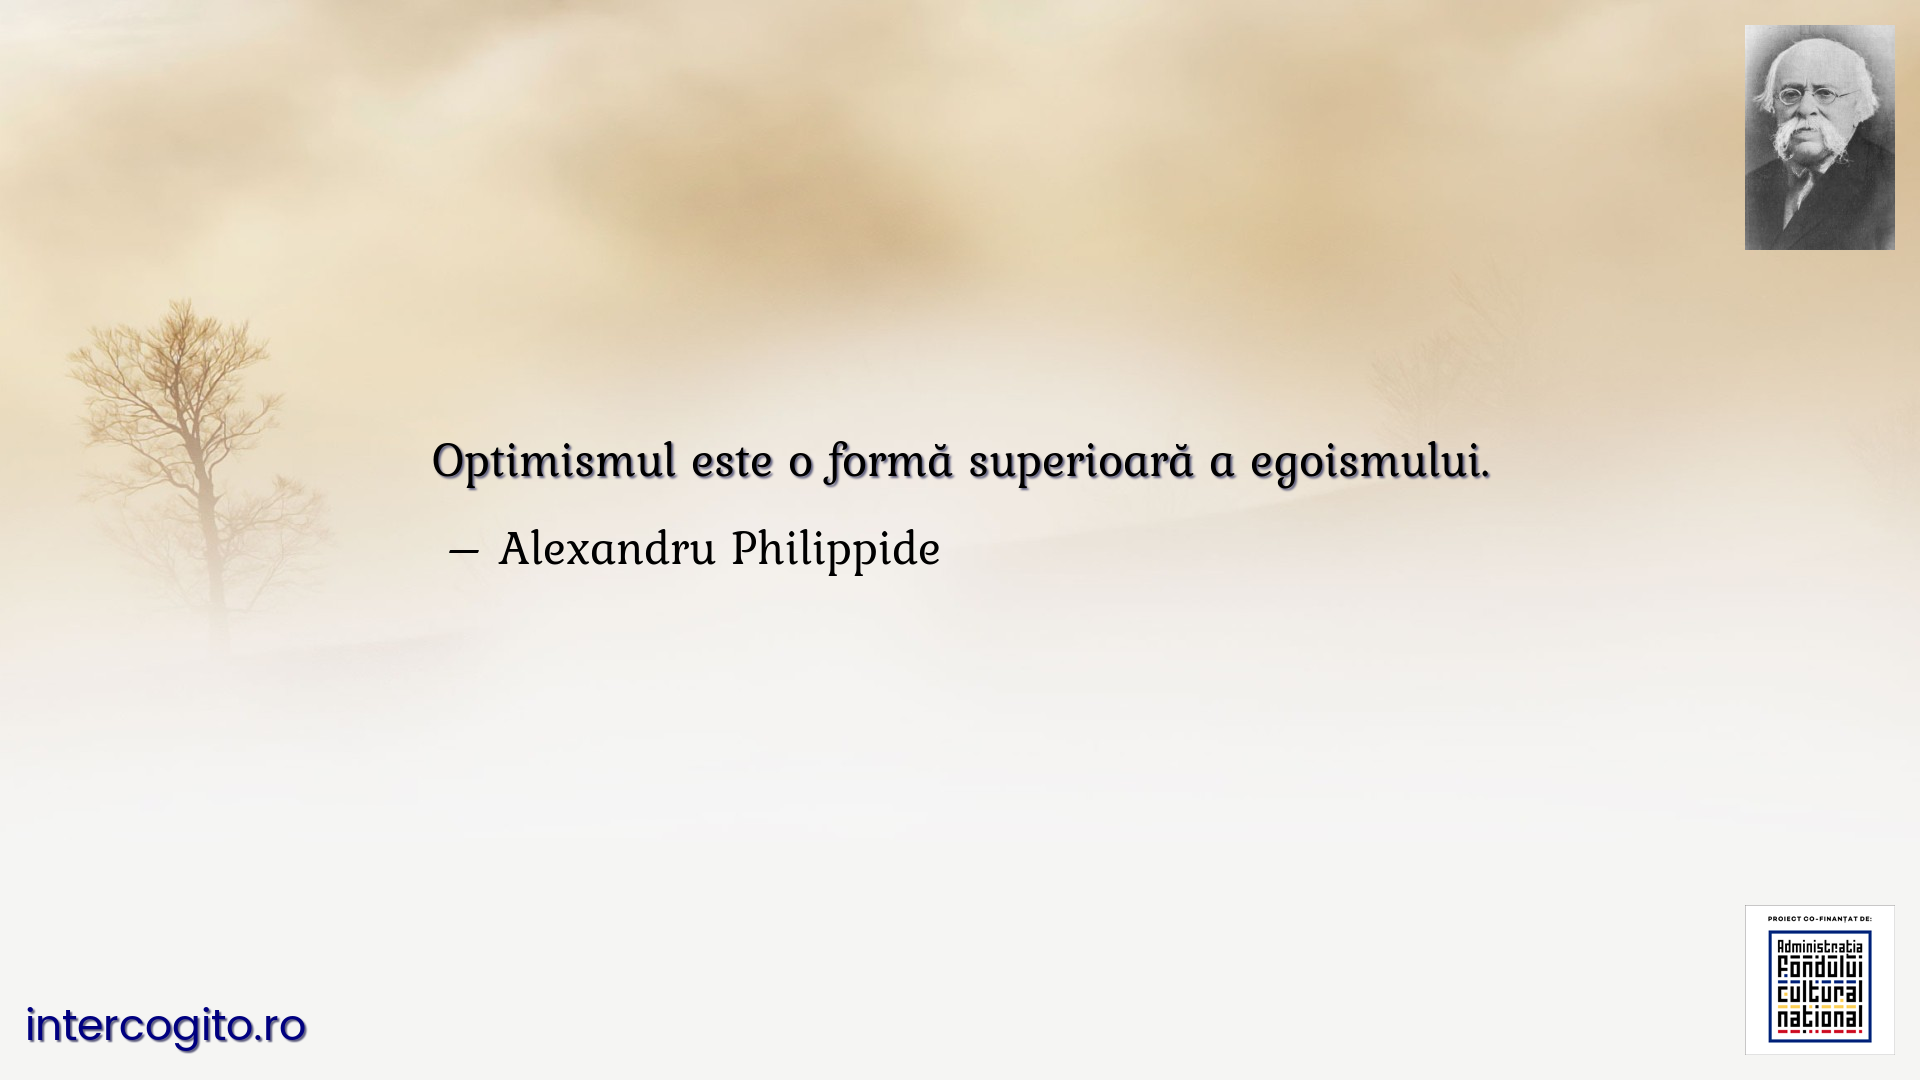 Optimismul este o formă superioară a egoismului.